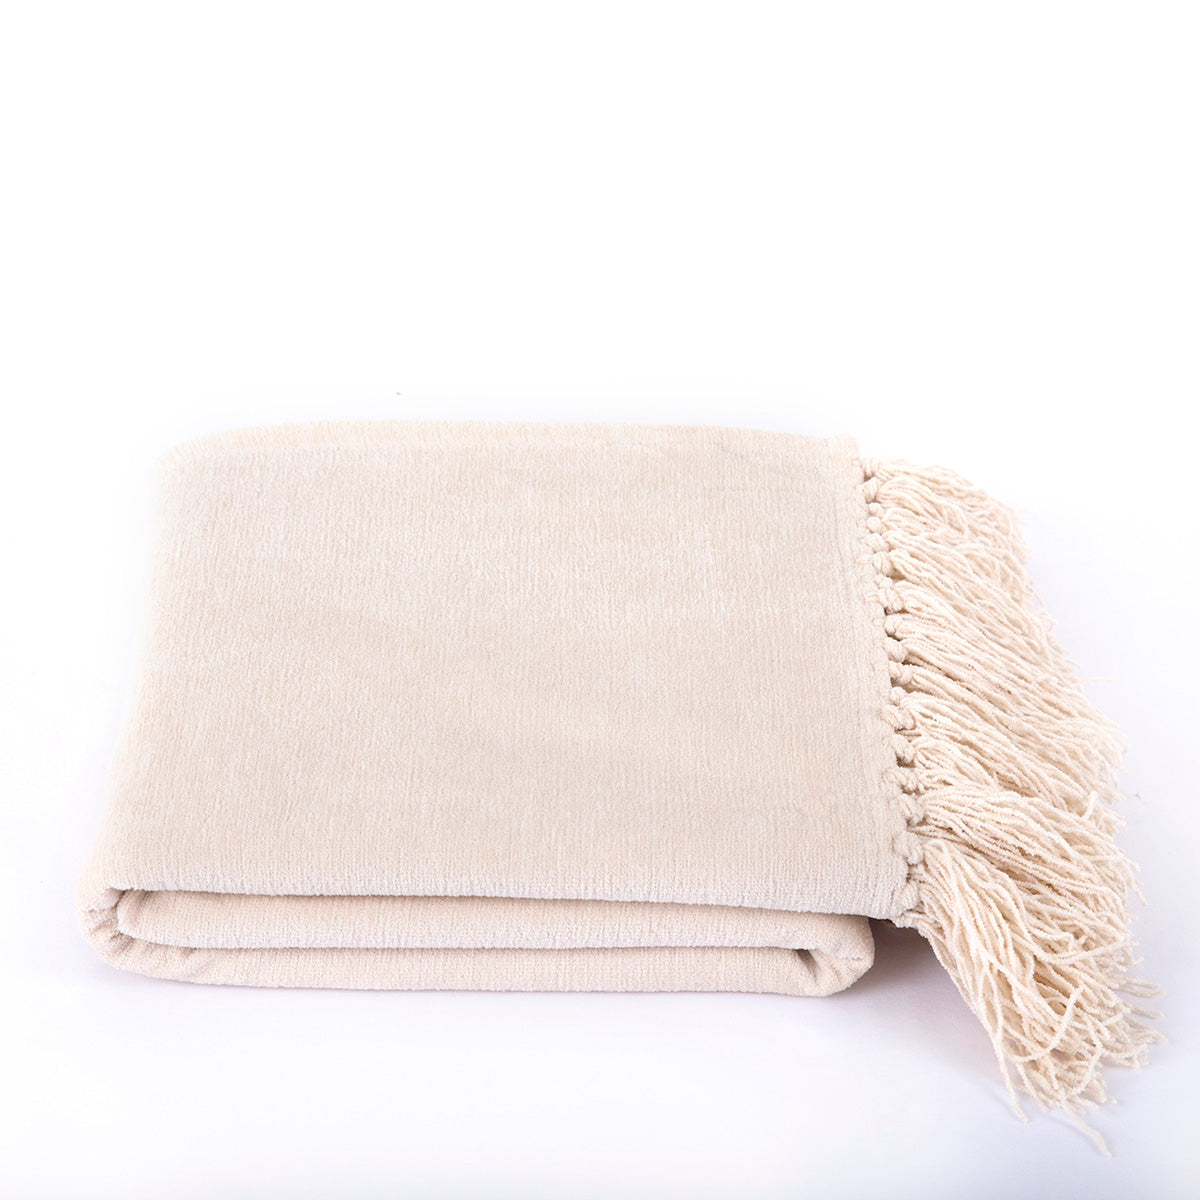 Jessica 100% Cotton Solid Woven Super Soft Ecru Throw/Sofa/Multi Cover/Single Bed Cover